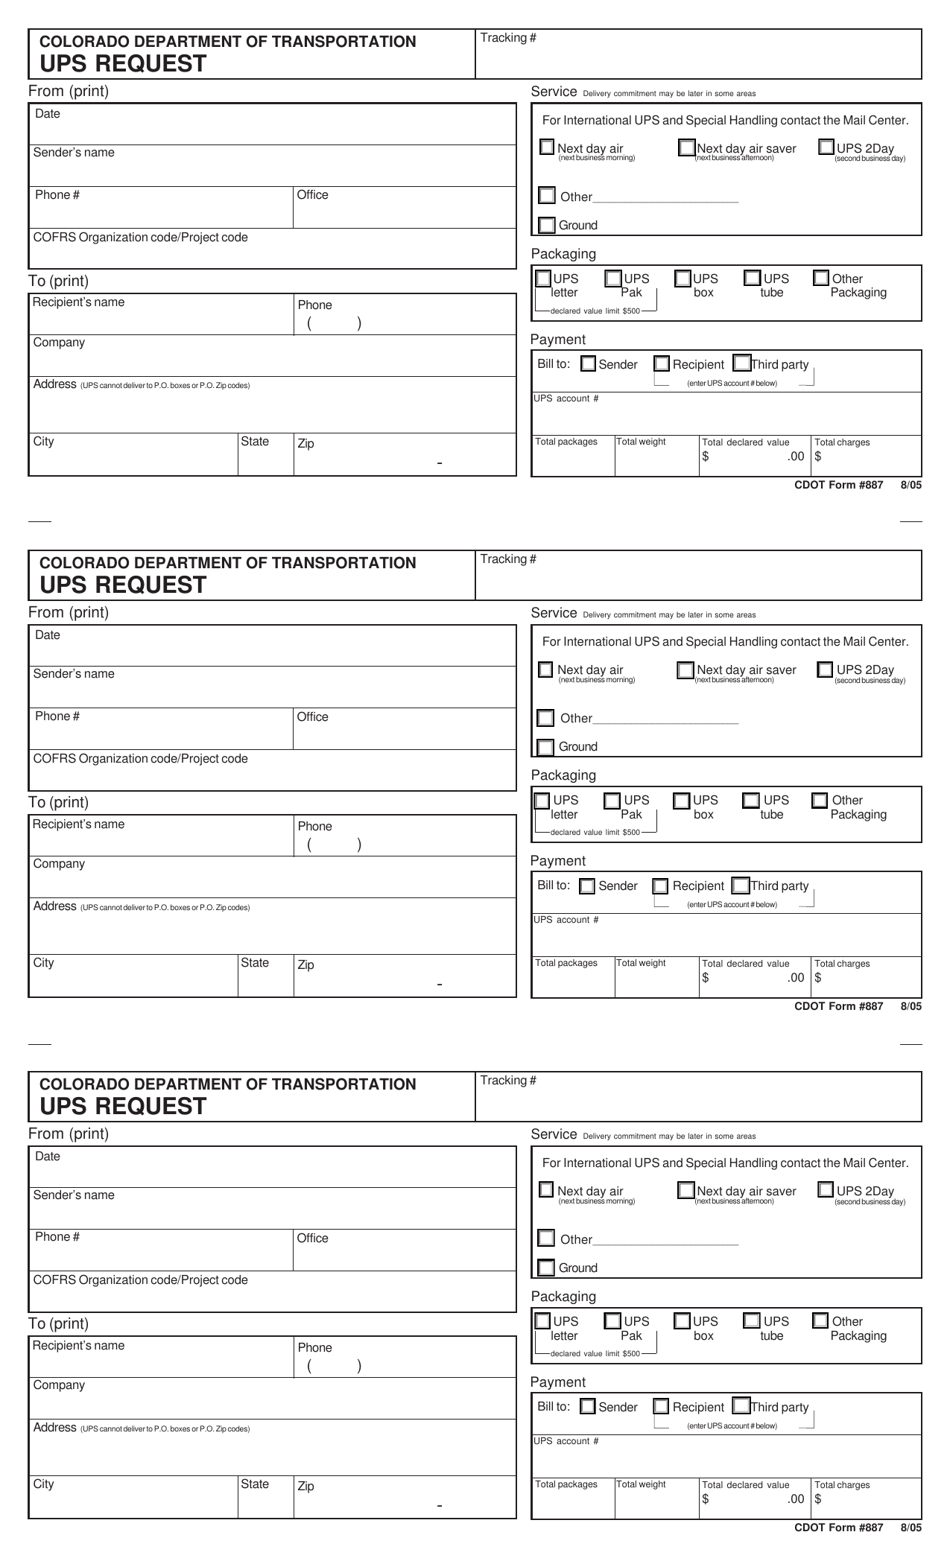 CDOT Form 887 Ups Request - Colorado, Page 1